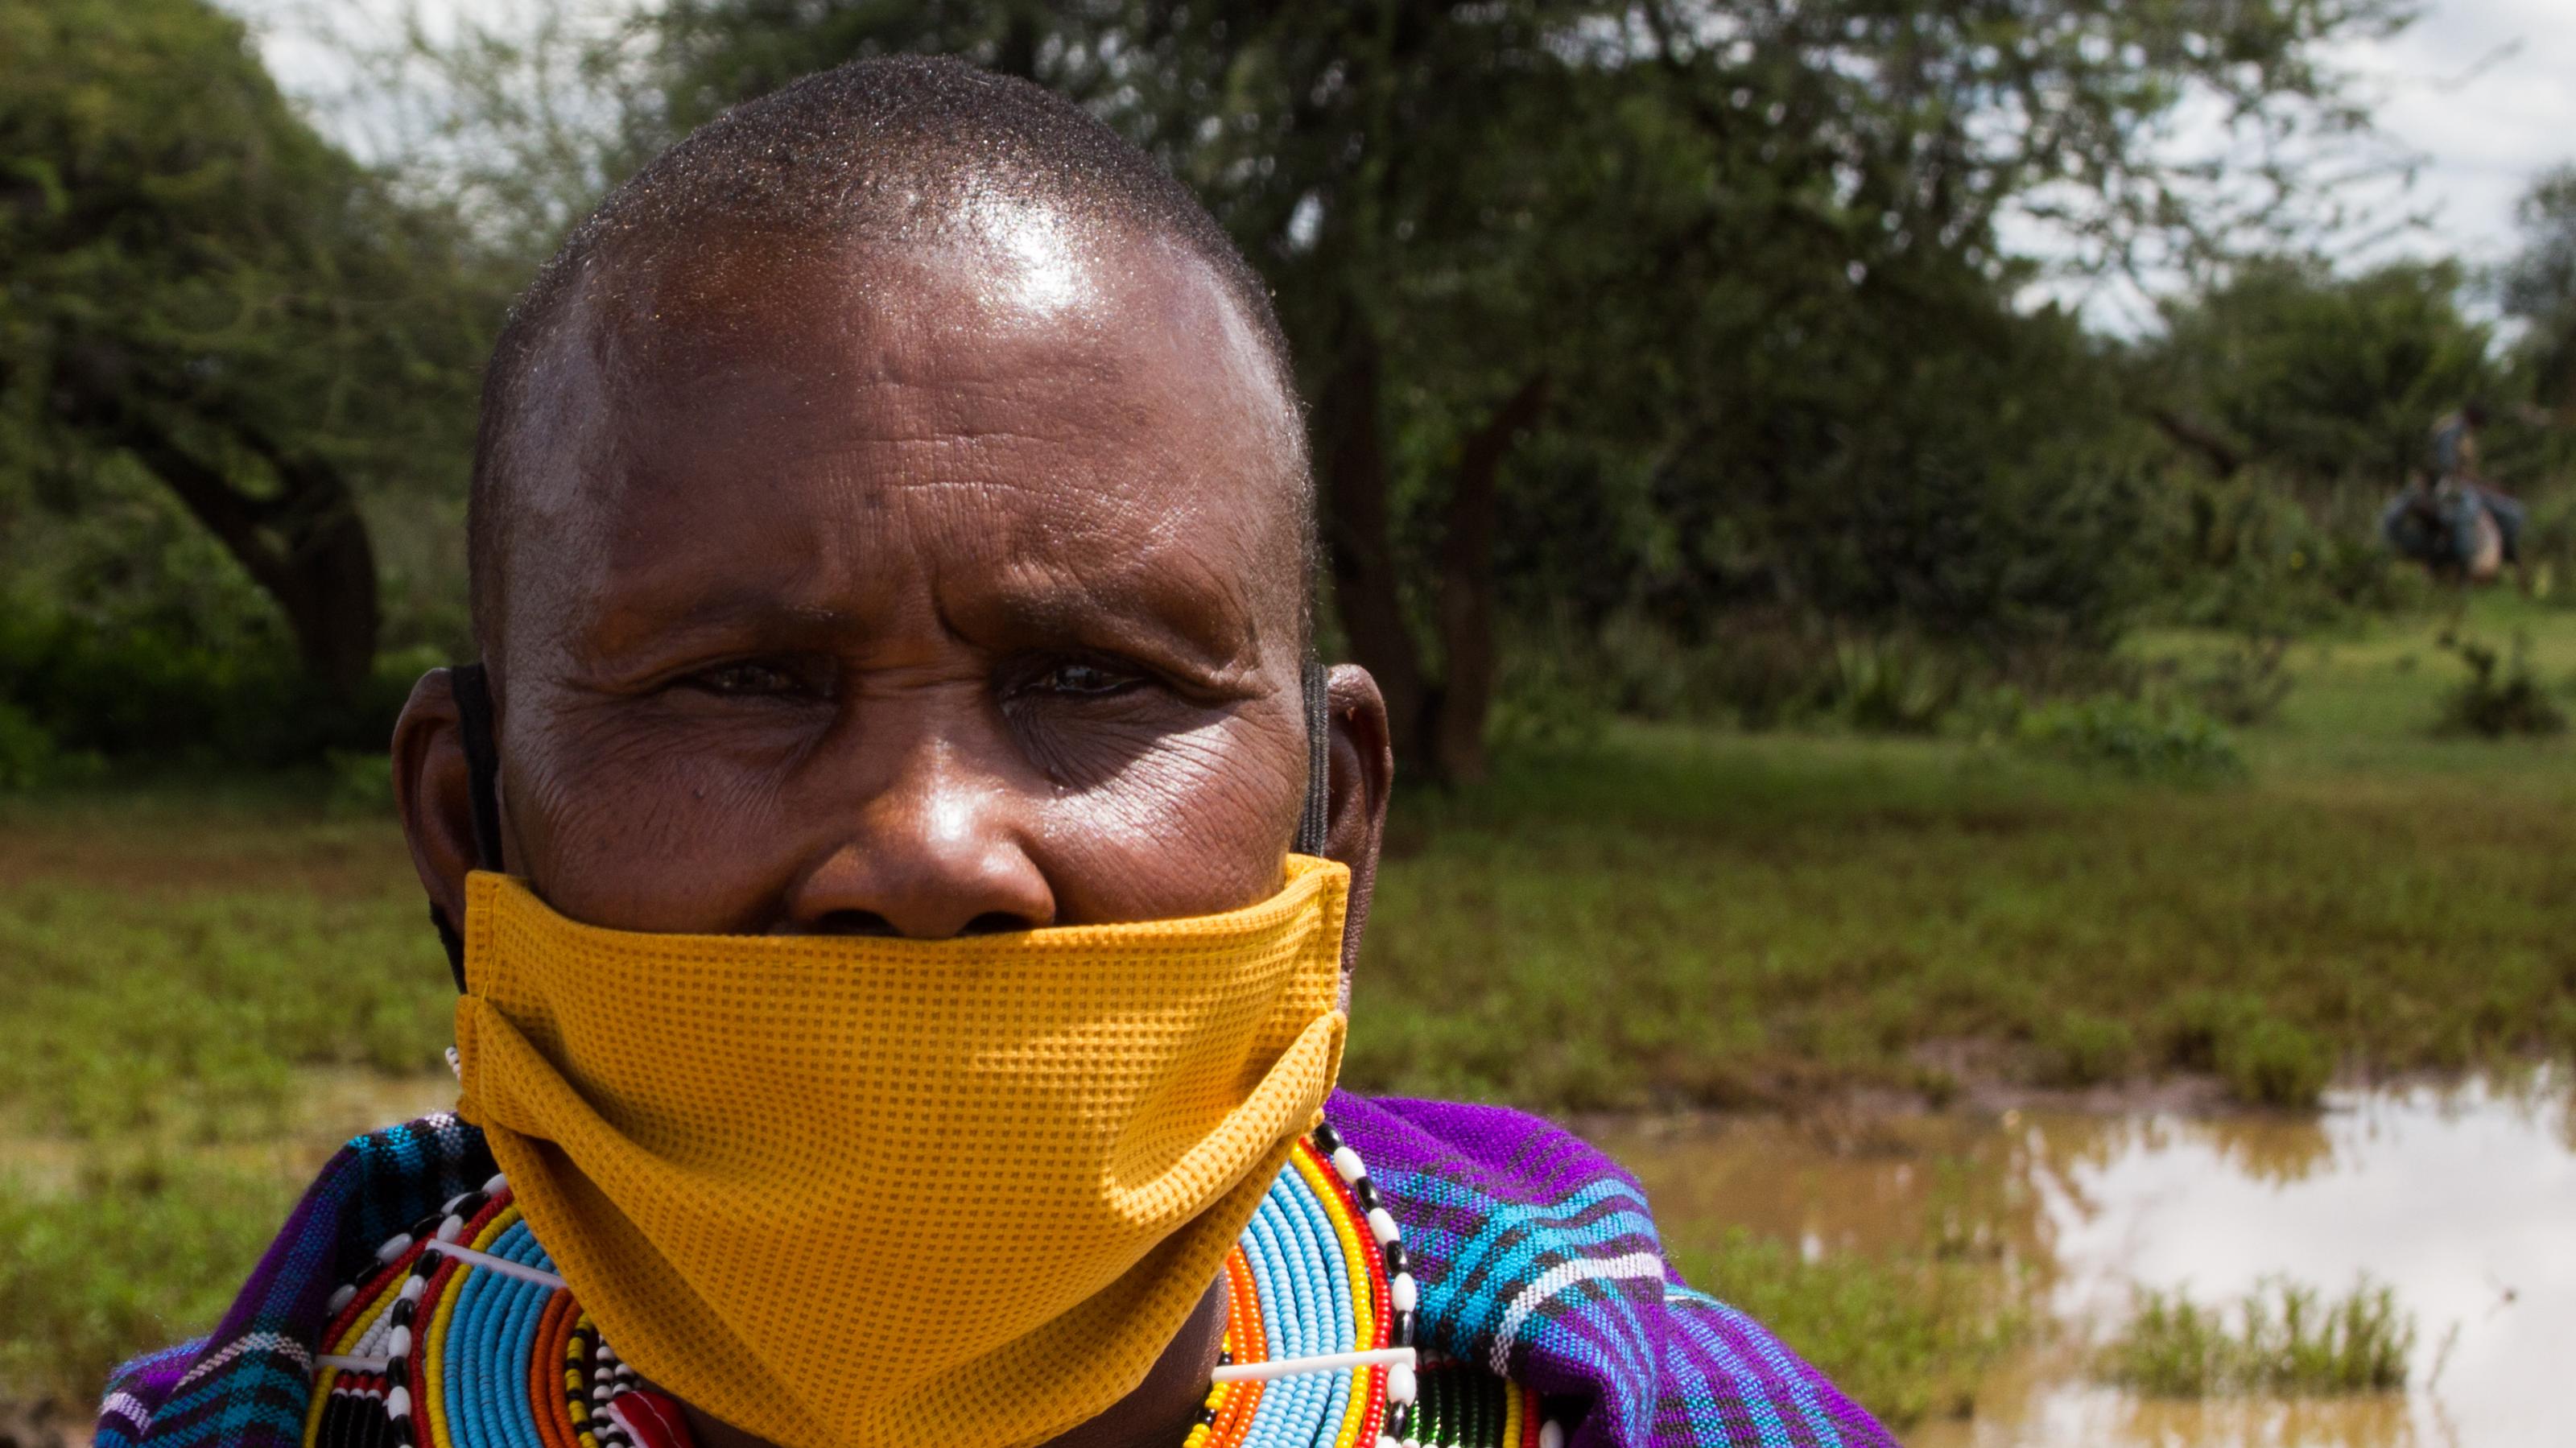 Zu sehen ist eine Massai-Frau in traditioneller Kleidung, d.h. in einem kräftig blauen Kleid mit reichlich Perlenschmuck um den Hals. Sie trägt einen gelben Mundschutz, wobei sie die Nase nicht bedeckt hat.